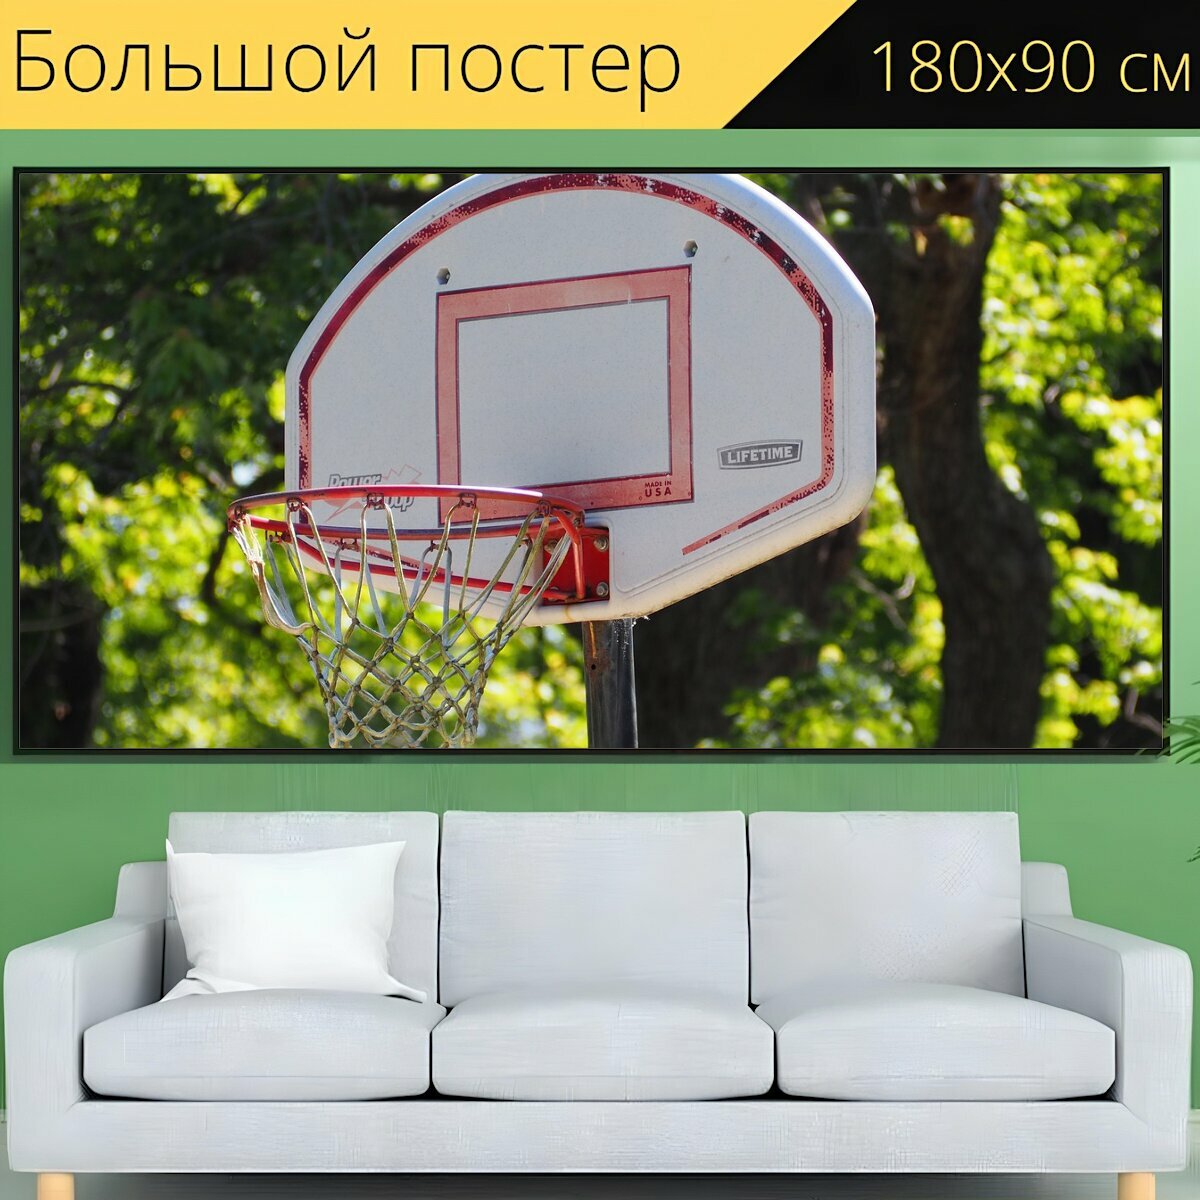 Большой постер "Баскетбол, баскетбольное кольцо, ржавое баскетбольное кольцо" 180 x 90 см. для интерьера